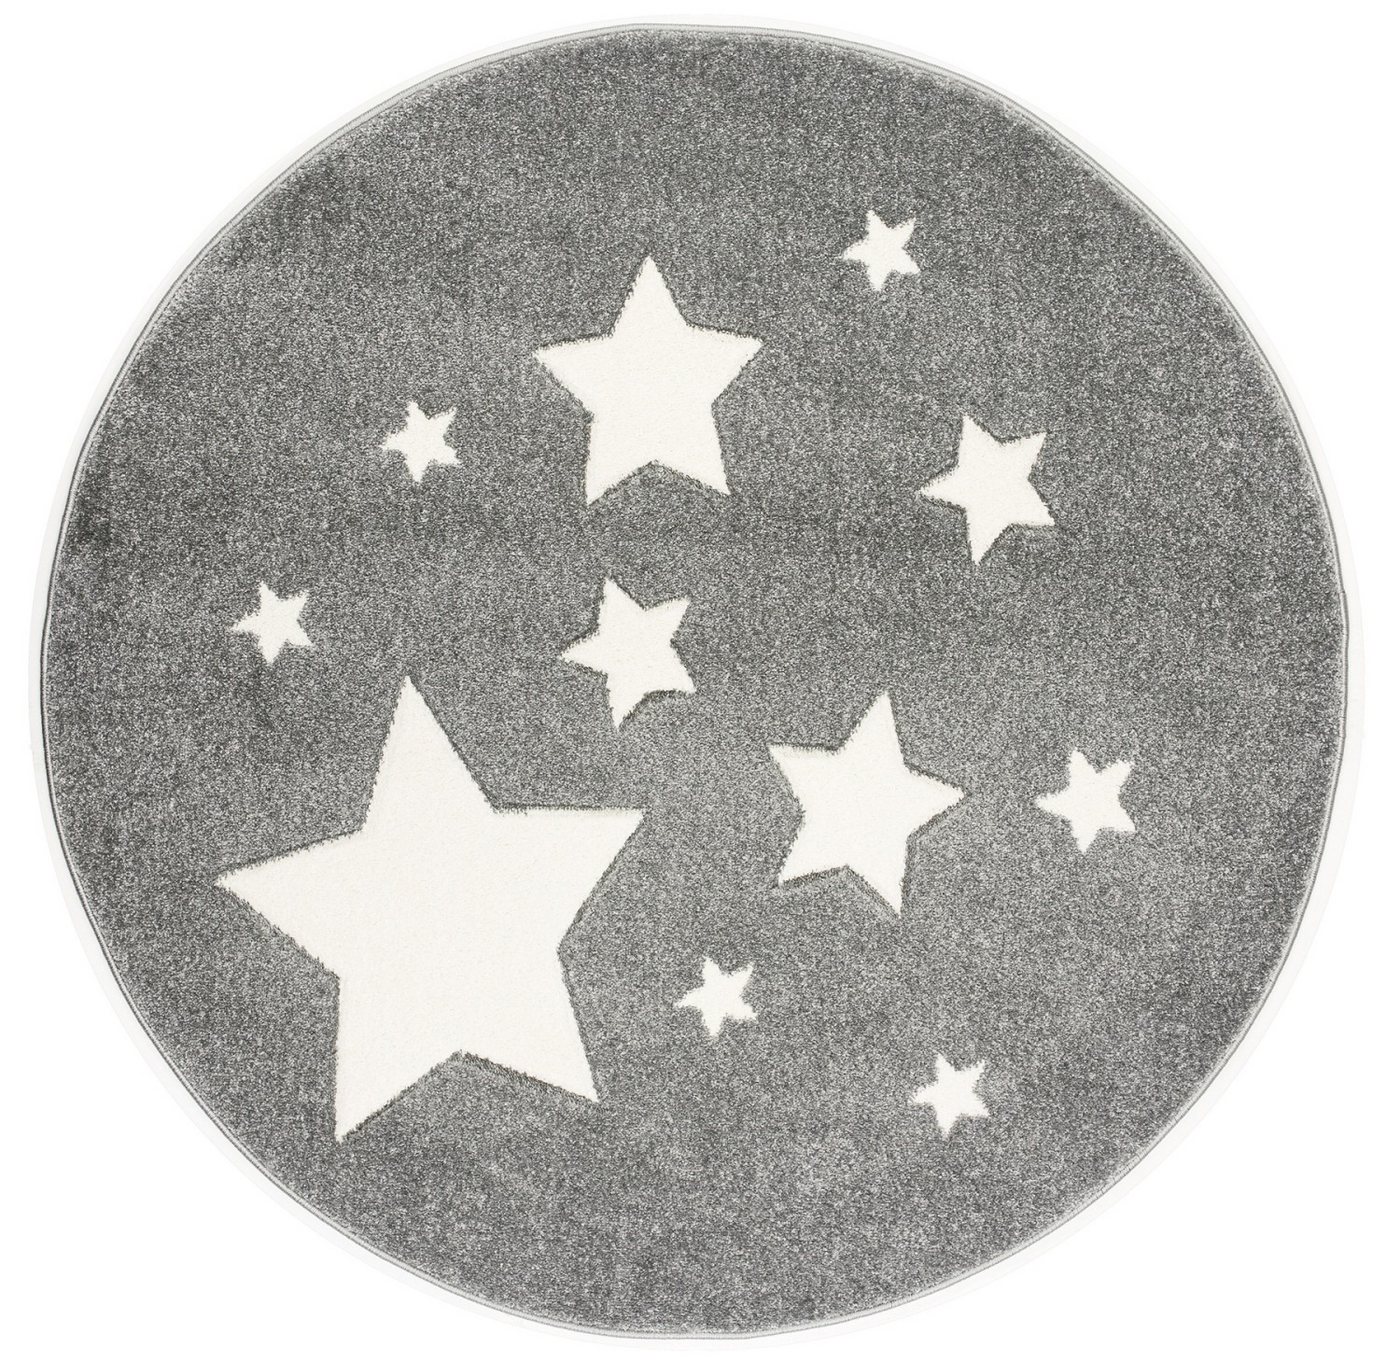 Kinderteppich Spielteppich, Sterne silbergrau, rund, Ø 133 cm, 18 mm hoch, Scandicliving, rund von Scandicliving